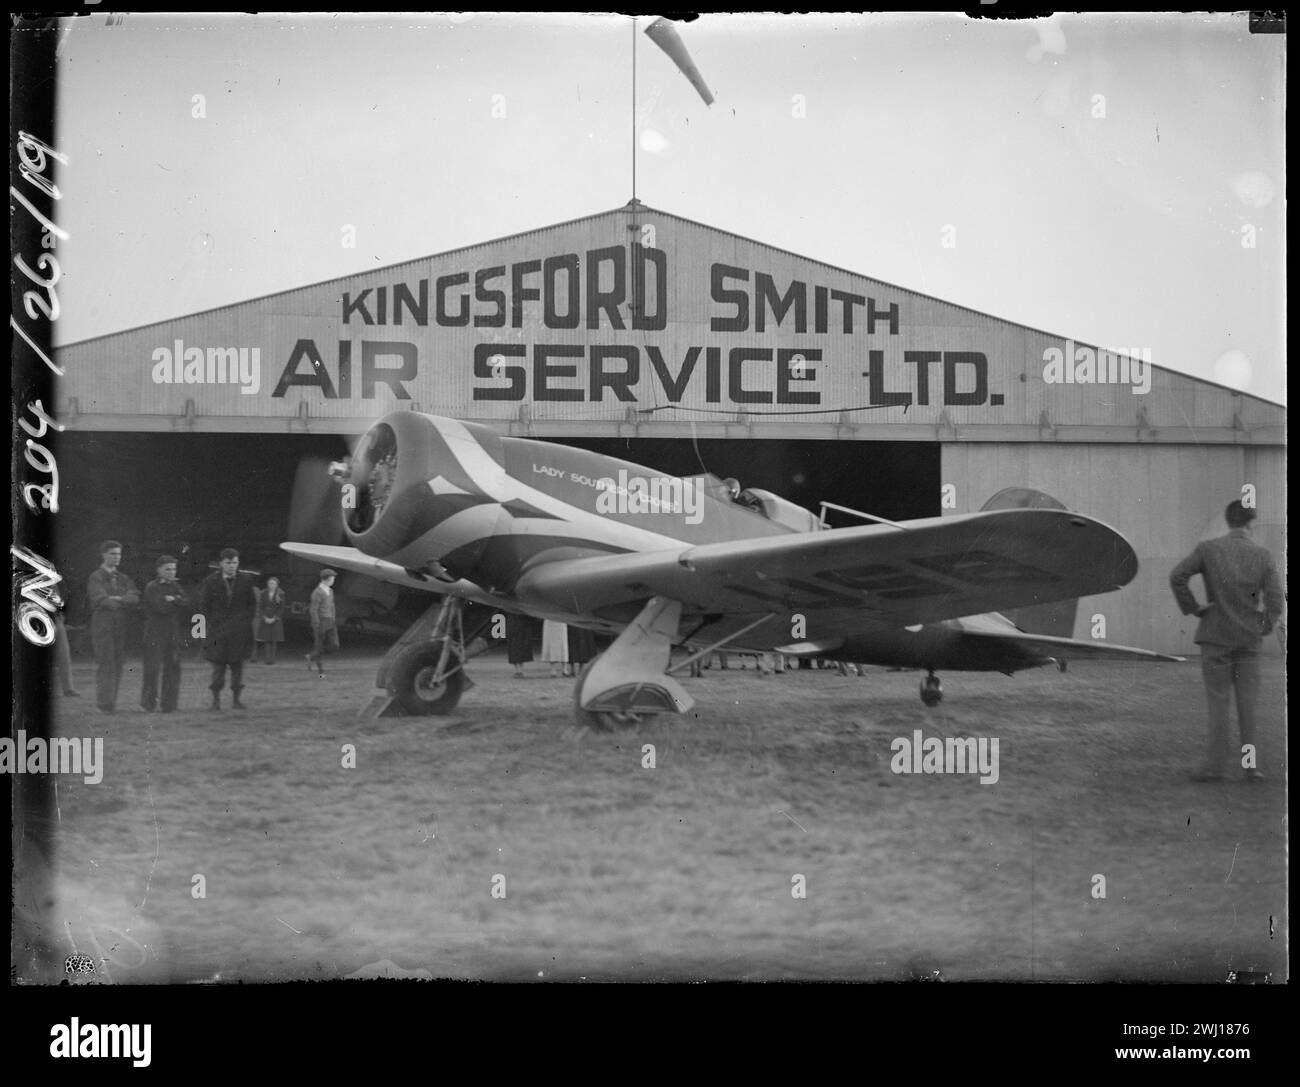 Un Lockheed 8E Altair chiamato "Lady Southern Cross" fuori dall'hangar Kingsford-Smith Air Service Ltd e sul campo di aviazione, Mascot 19 luglio-21 ottobre 1934 Foto Stock